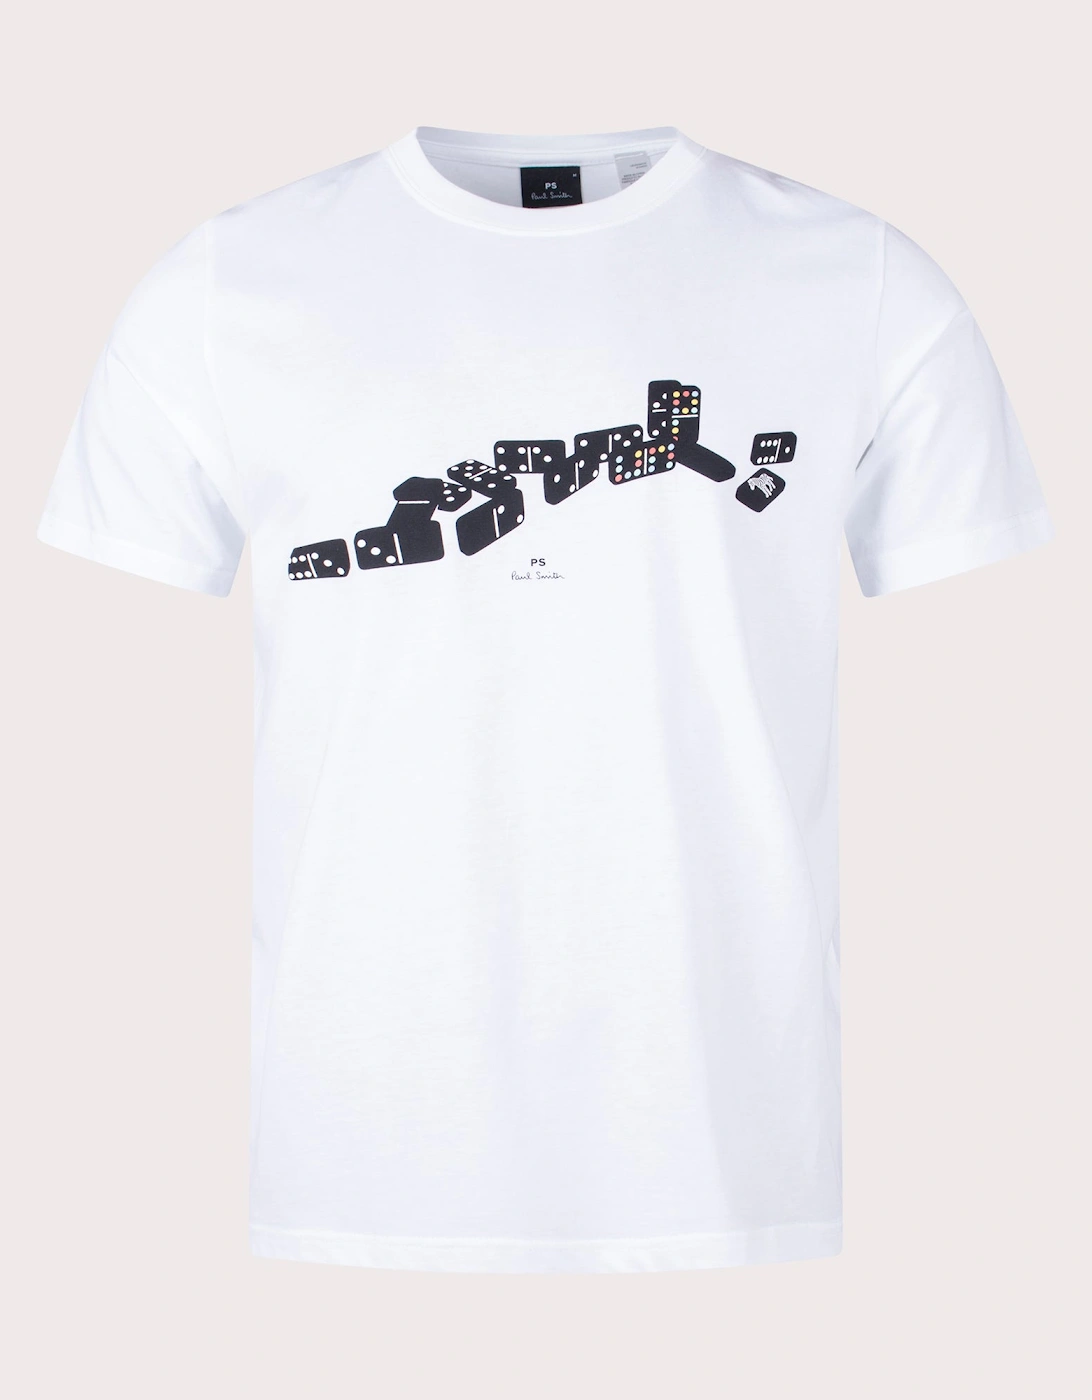 Domino T-Shirt, 3 of 2